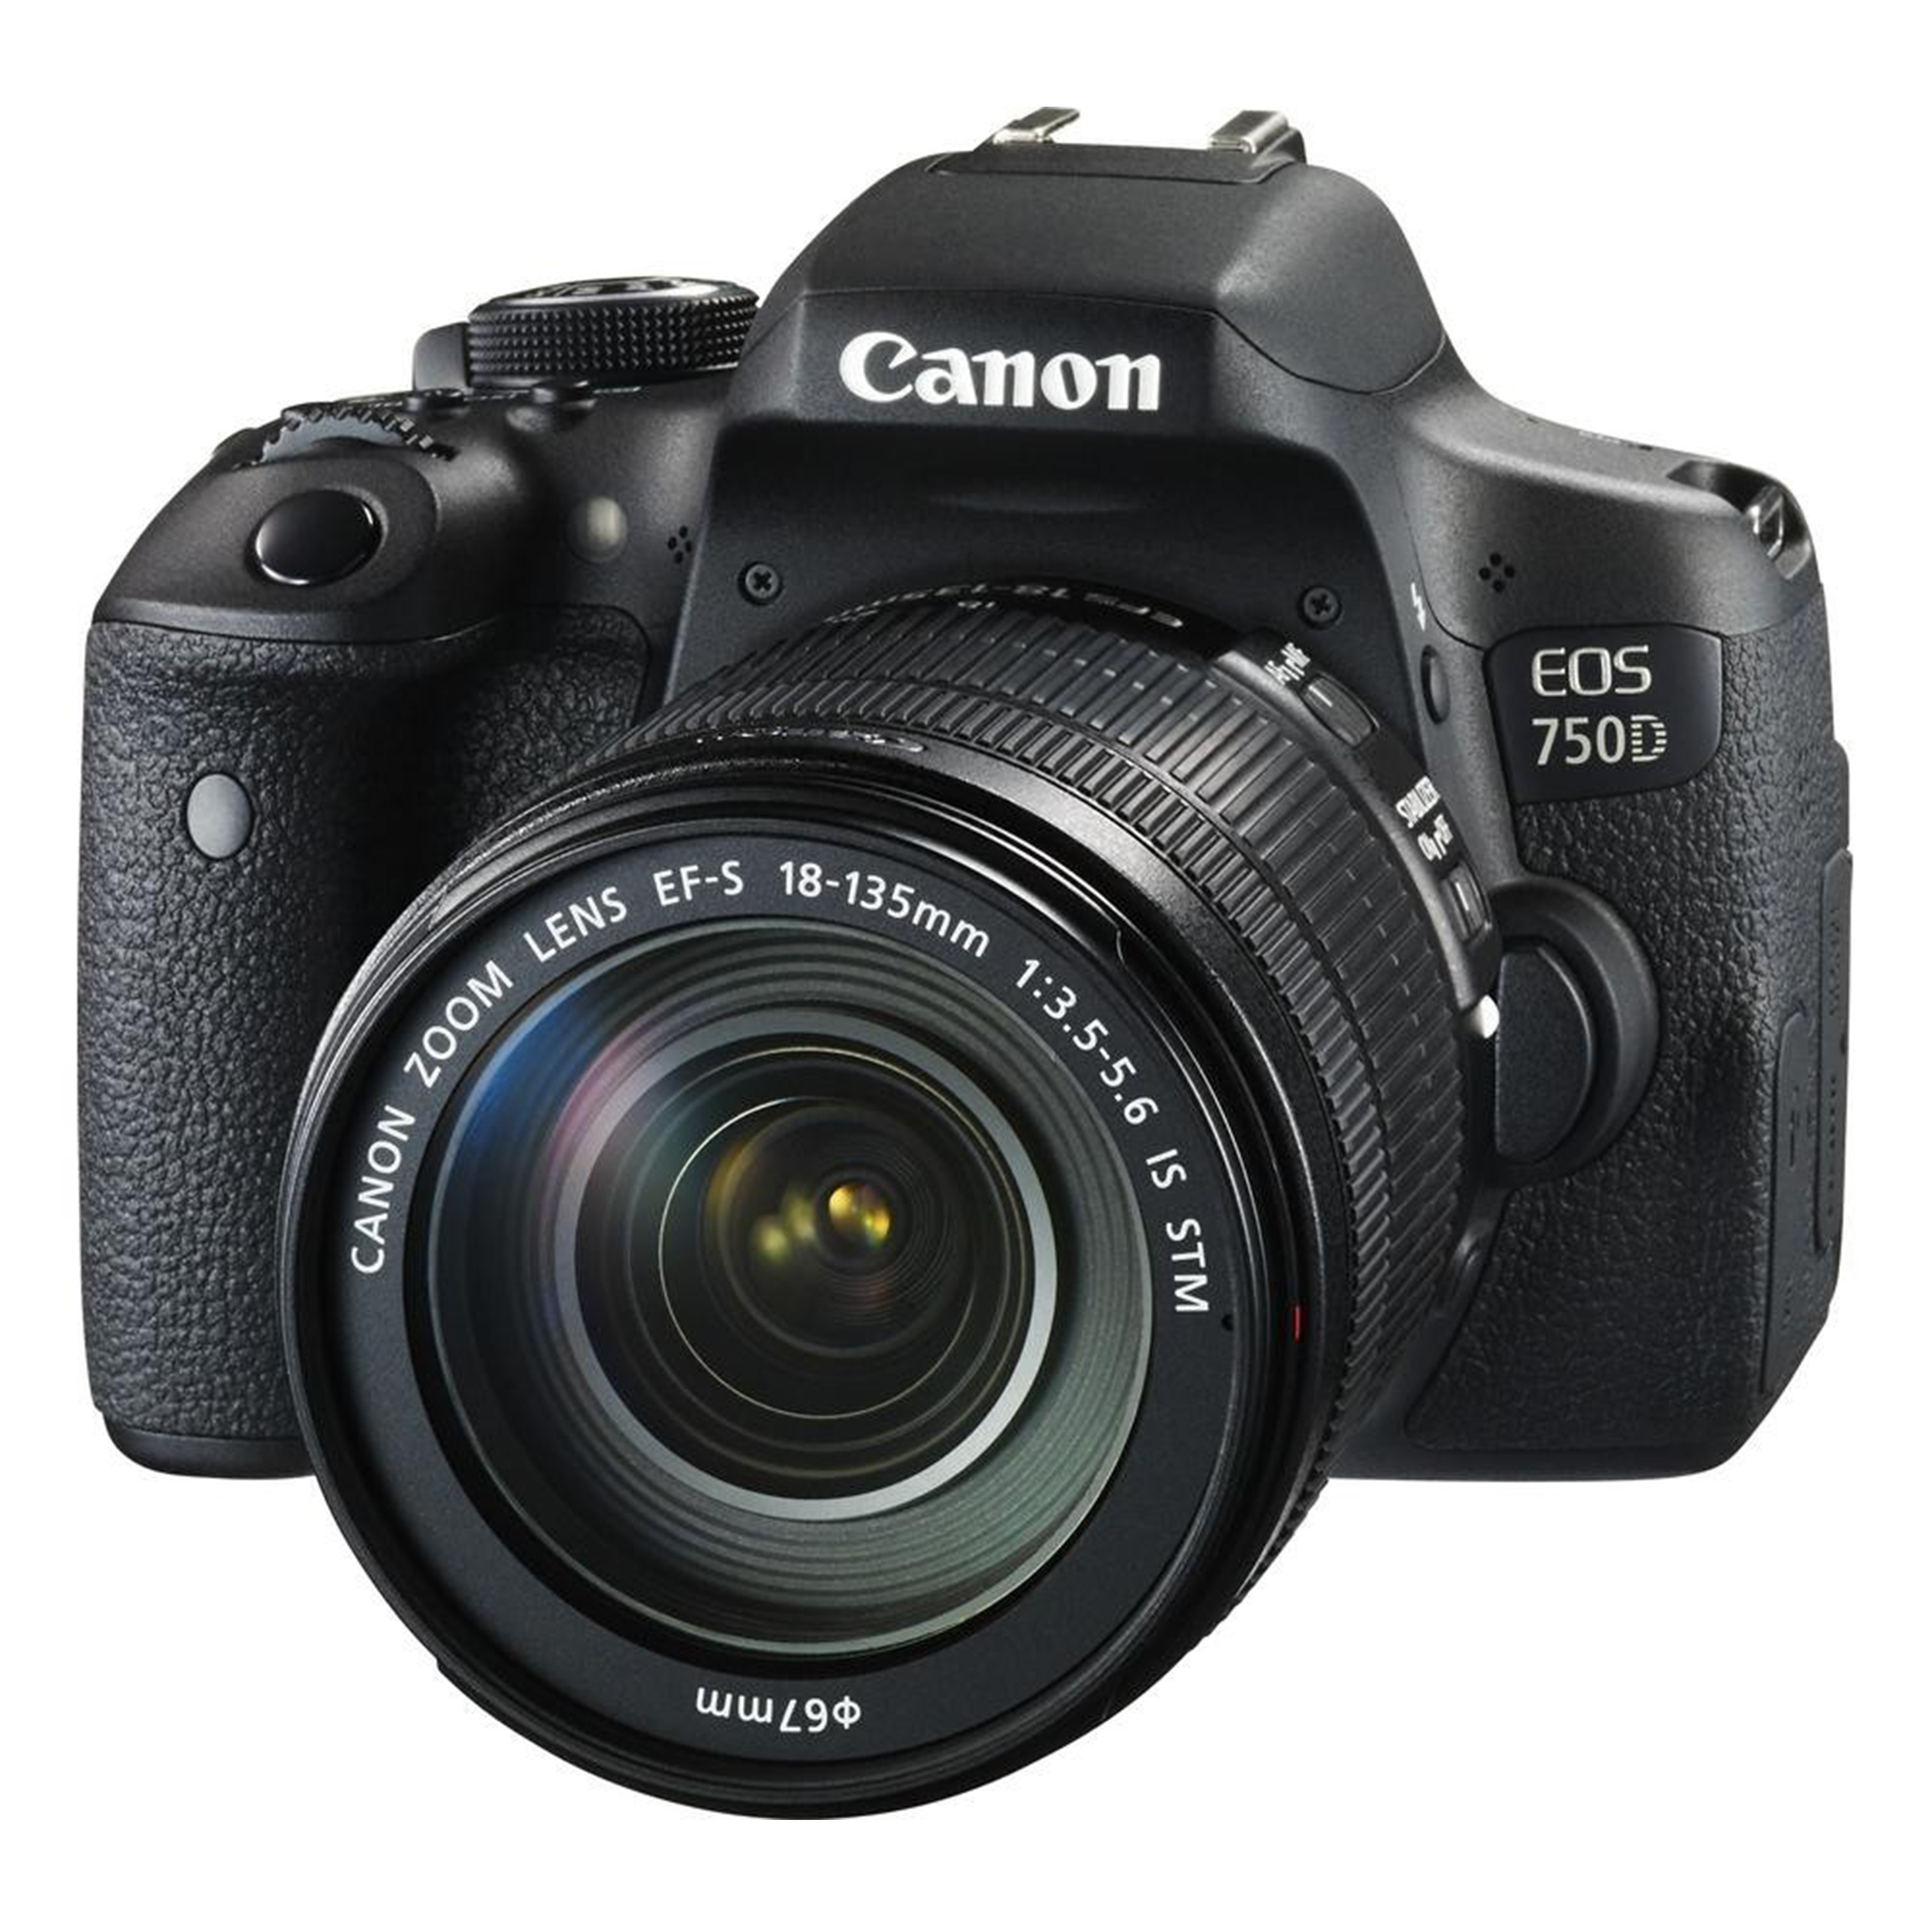 دوربین دیجیتال کانن مدل 750D  Rebel T6i   Kiss X8i به همراه لنز 18-135 میلی متر IS STM و  لوازم جانبی